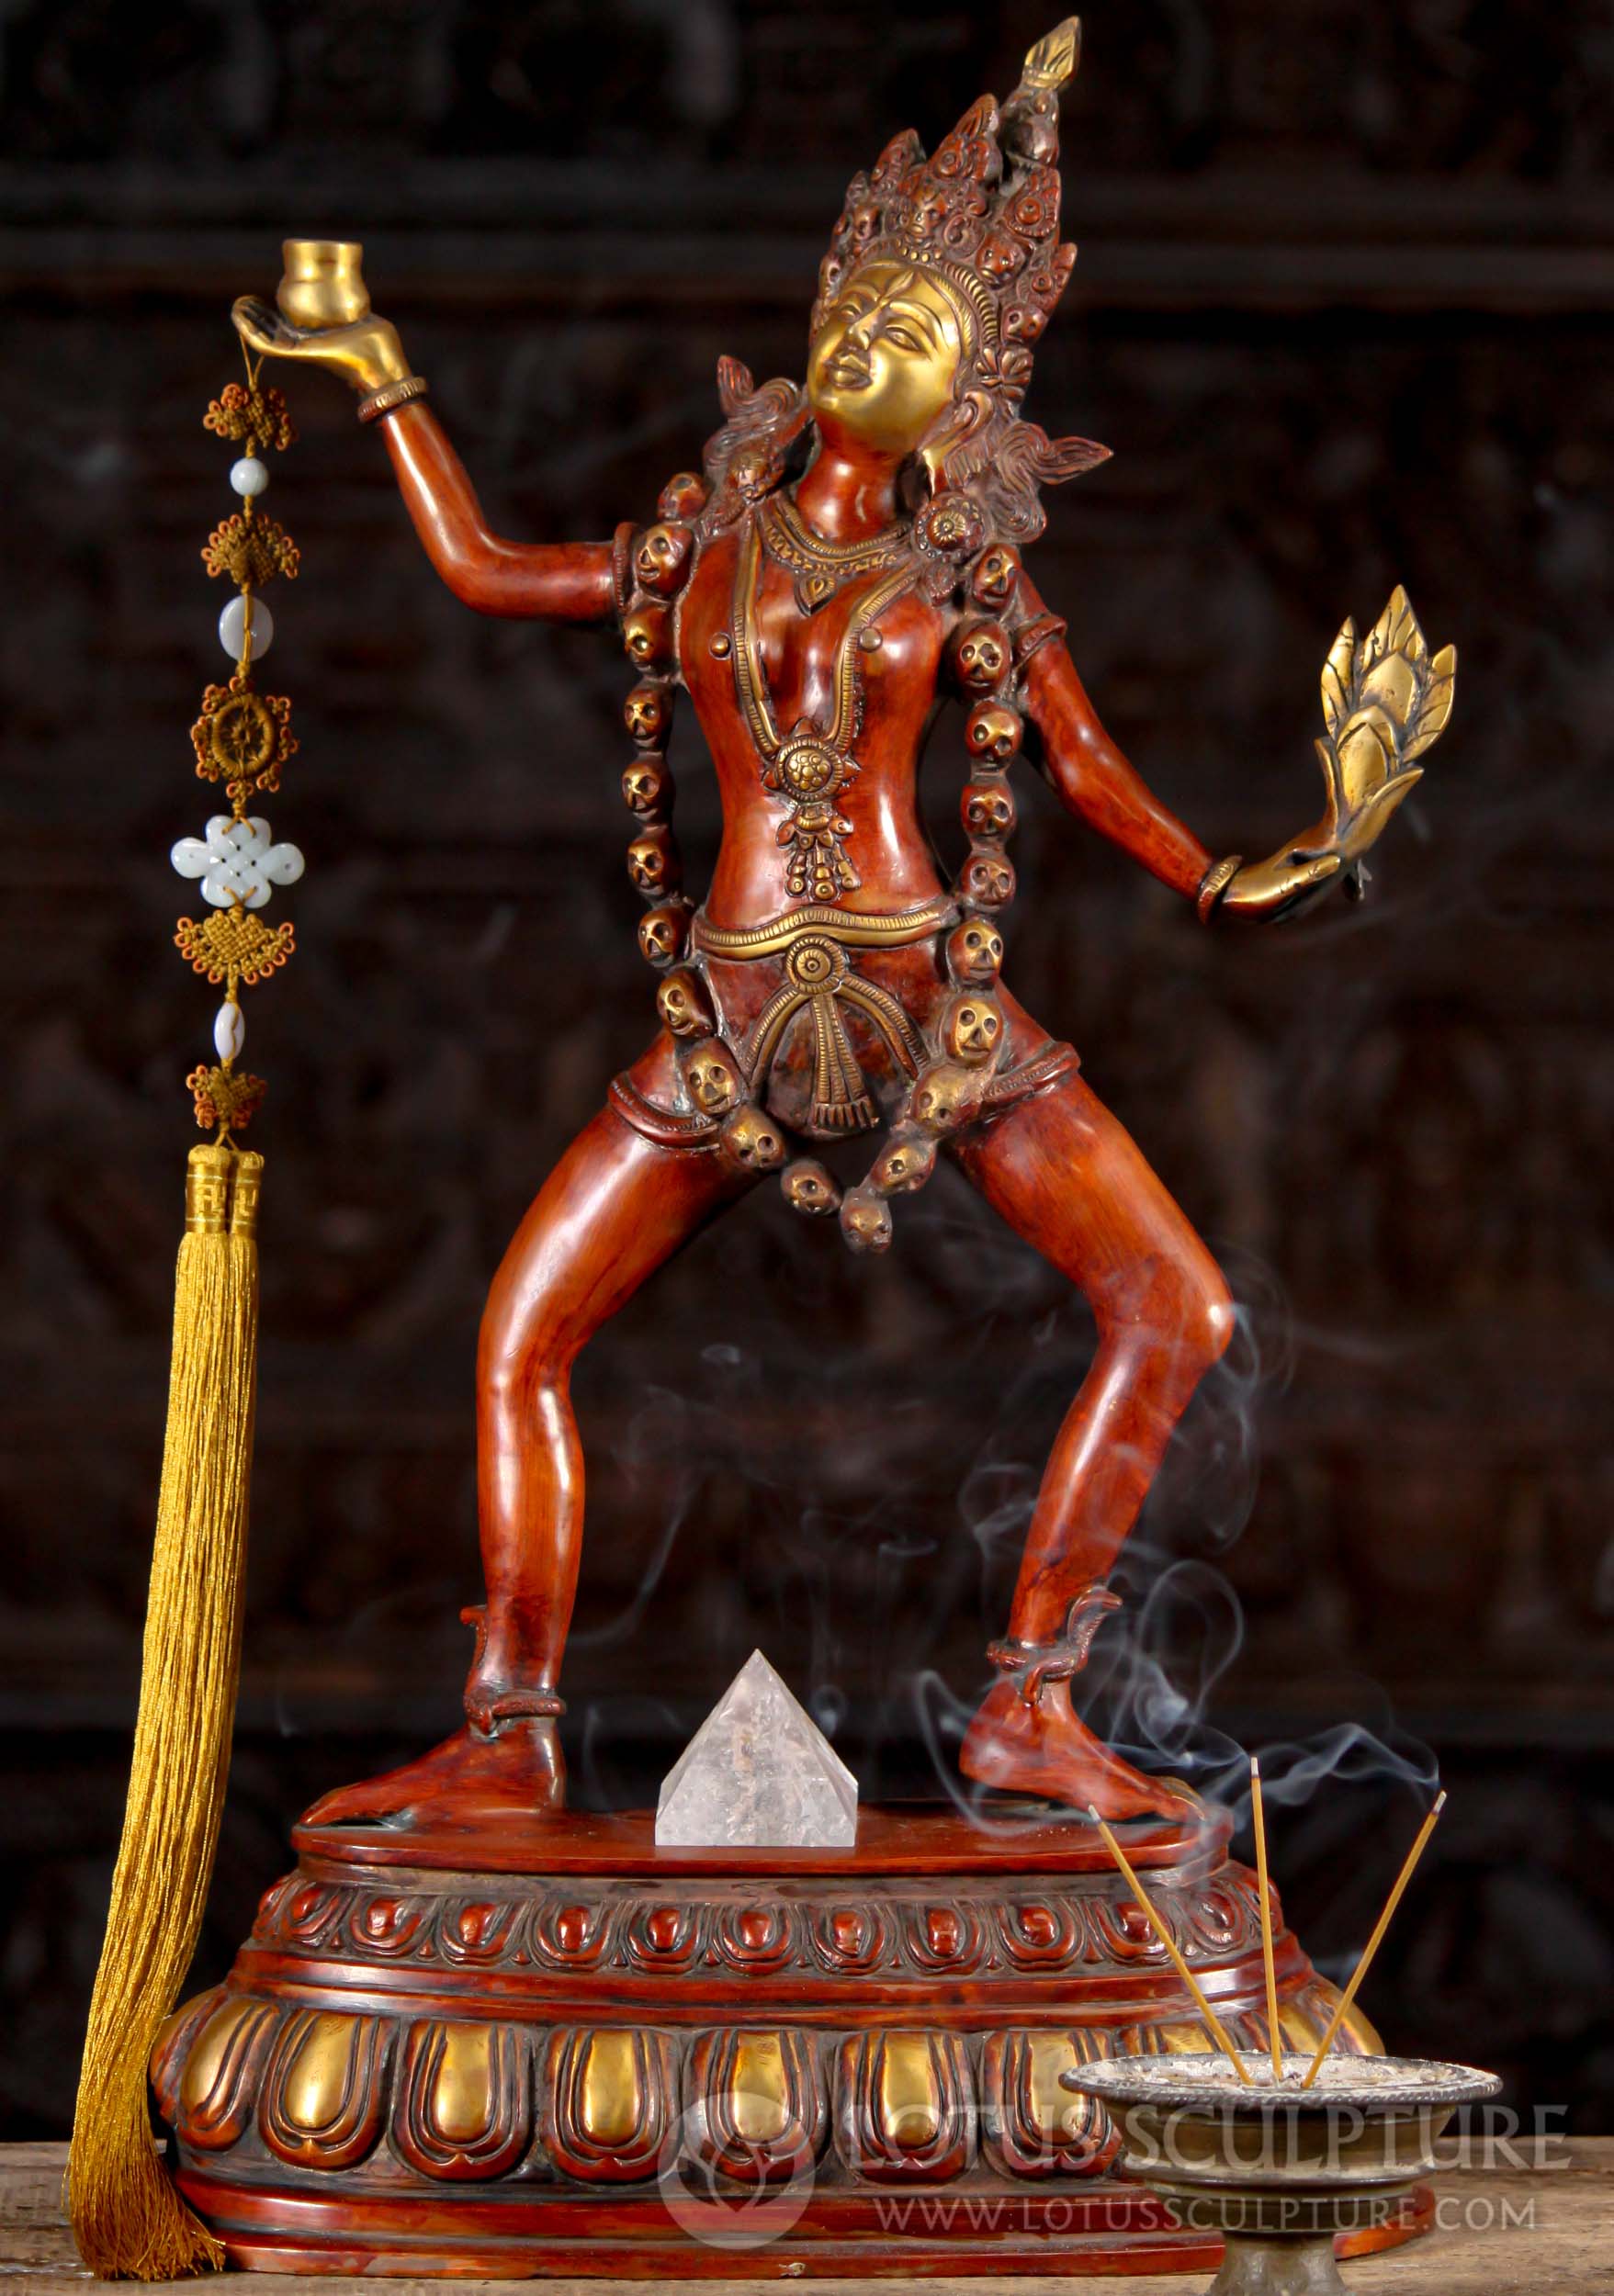 SOLD Brass Sculpture Of The Hindu Goddess Kali Dancing Wearing A Crown Garland Of Skulls